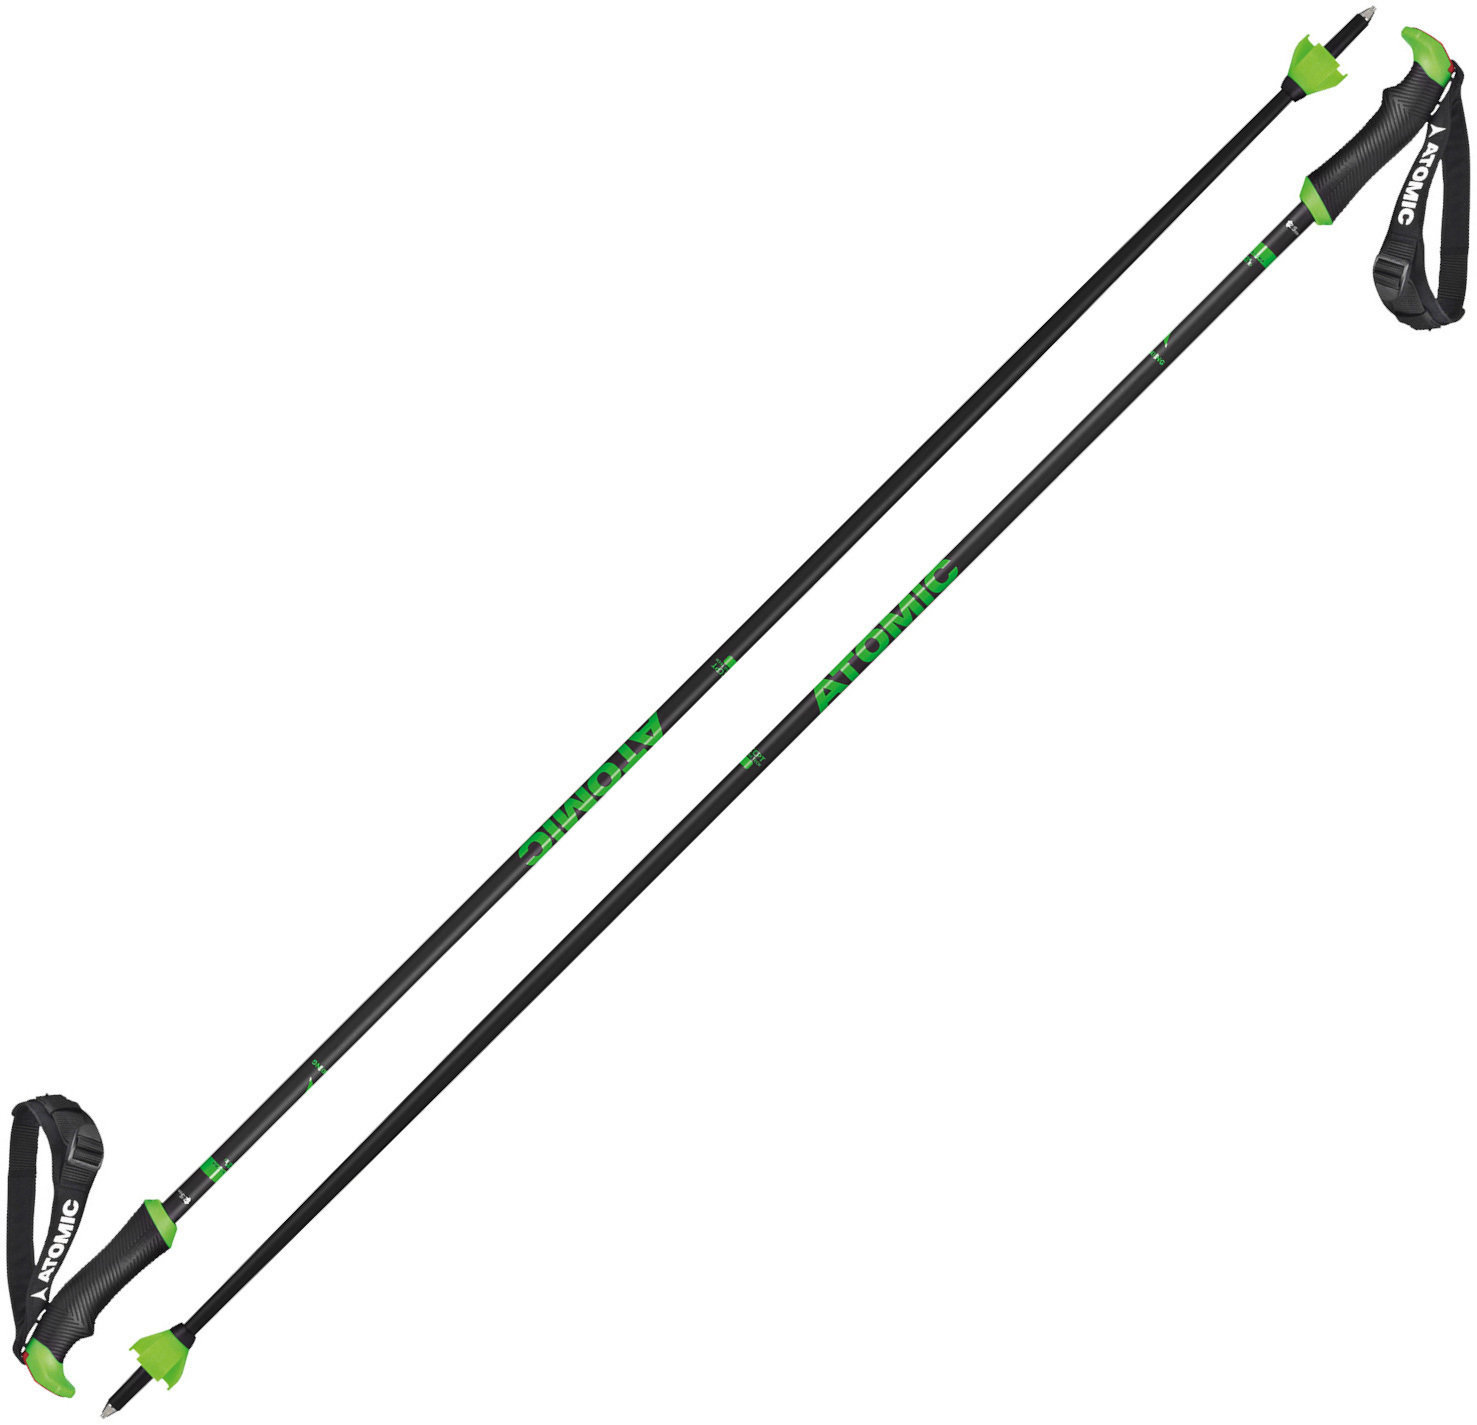 Ski-stokken Atomic Redster X Carbon SQS Grey-Green 130 cm Ski-stokken